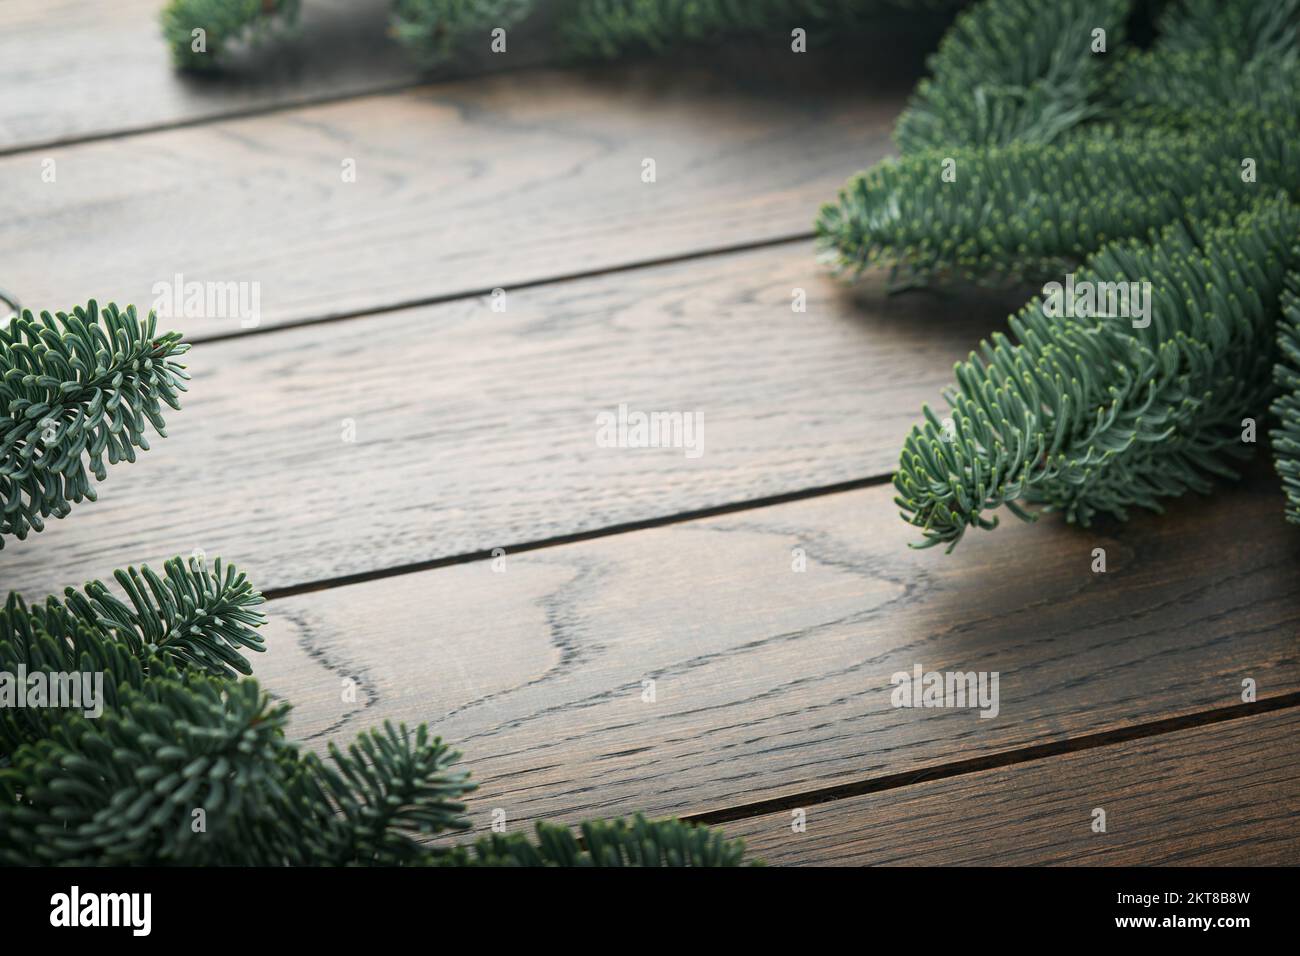 Heirate Weihnachten. Neujahrshintergrund mit Tannenzweigen und Weihnachts-Shortbread-Keksen mit Sternen und rotem Band, Tannenbaum auf der rechten und linken Seite im Dunkeln Stockfoto